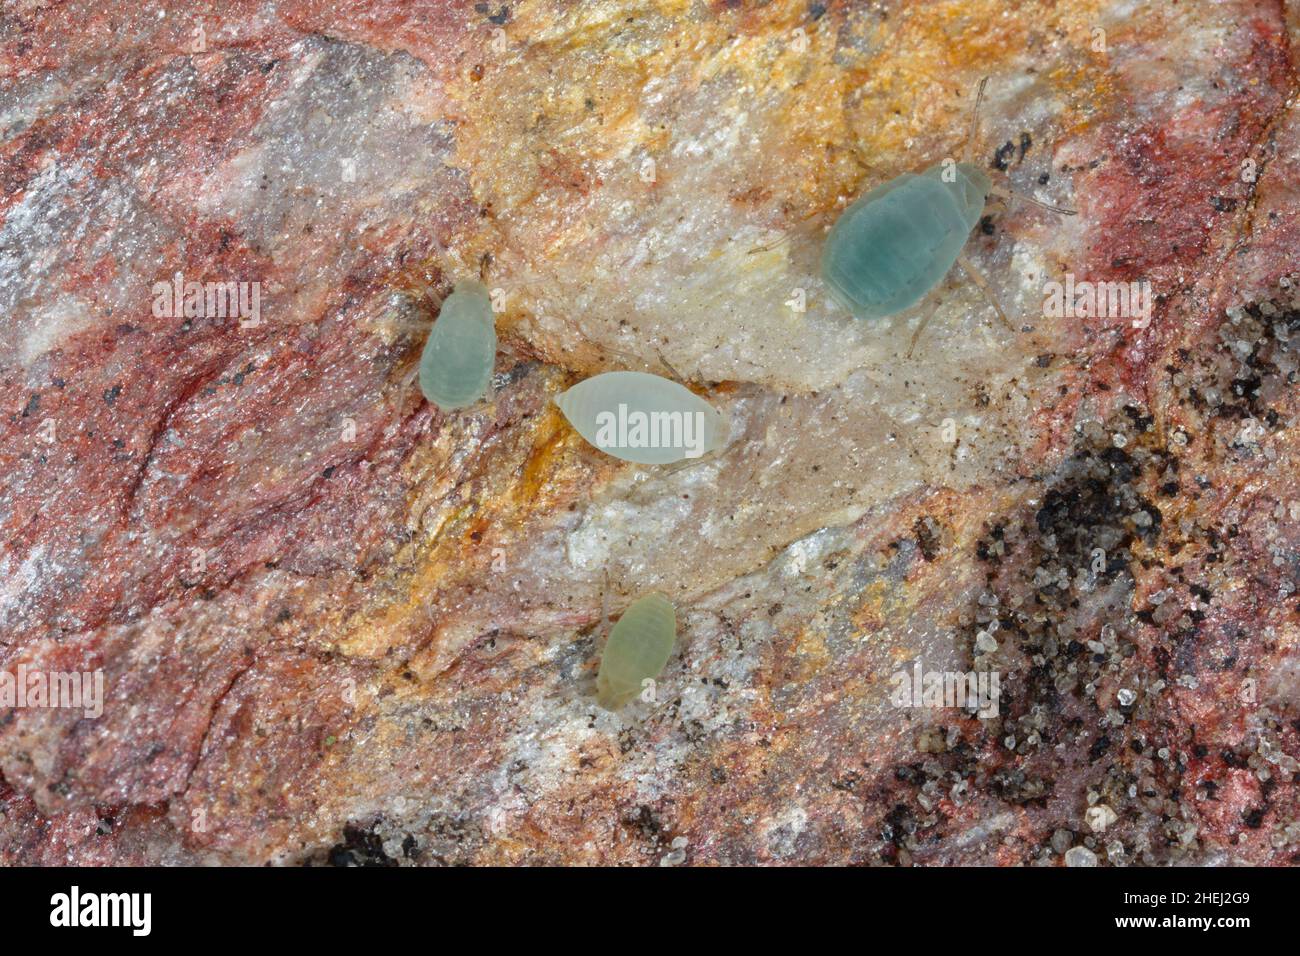 Unterirdische Blattläuse, die unter einem Stein im Garten gefunden wurden. Hohe Vergrößerung. Stockfoto